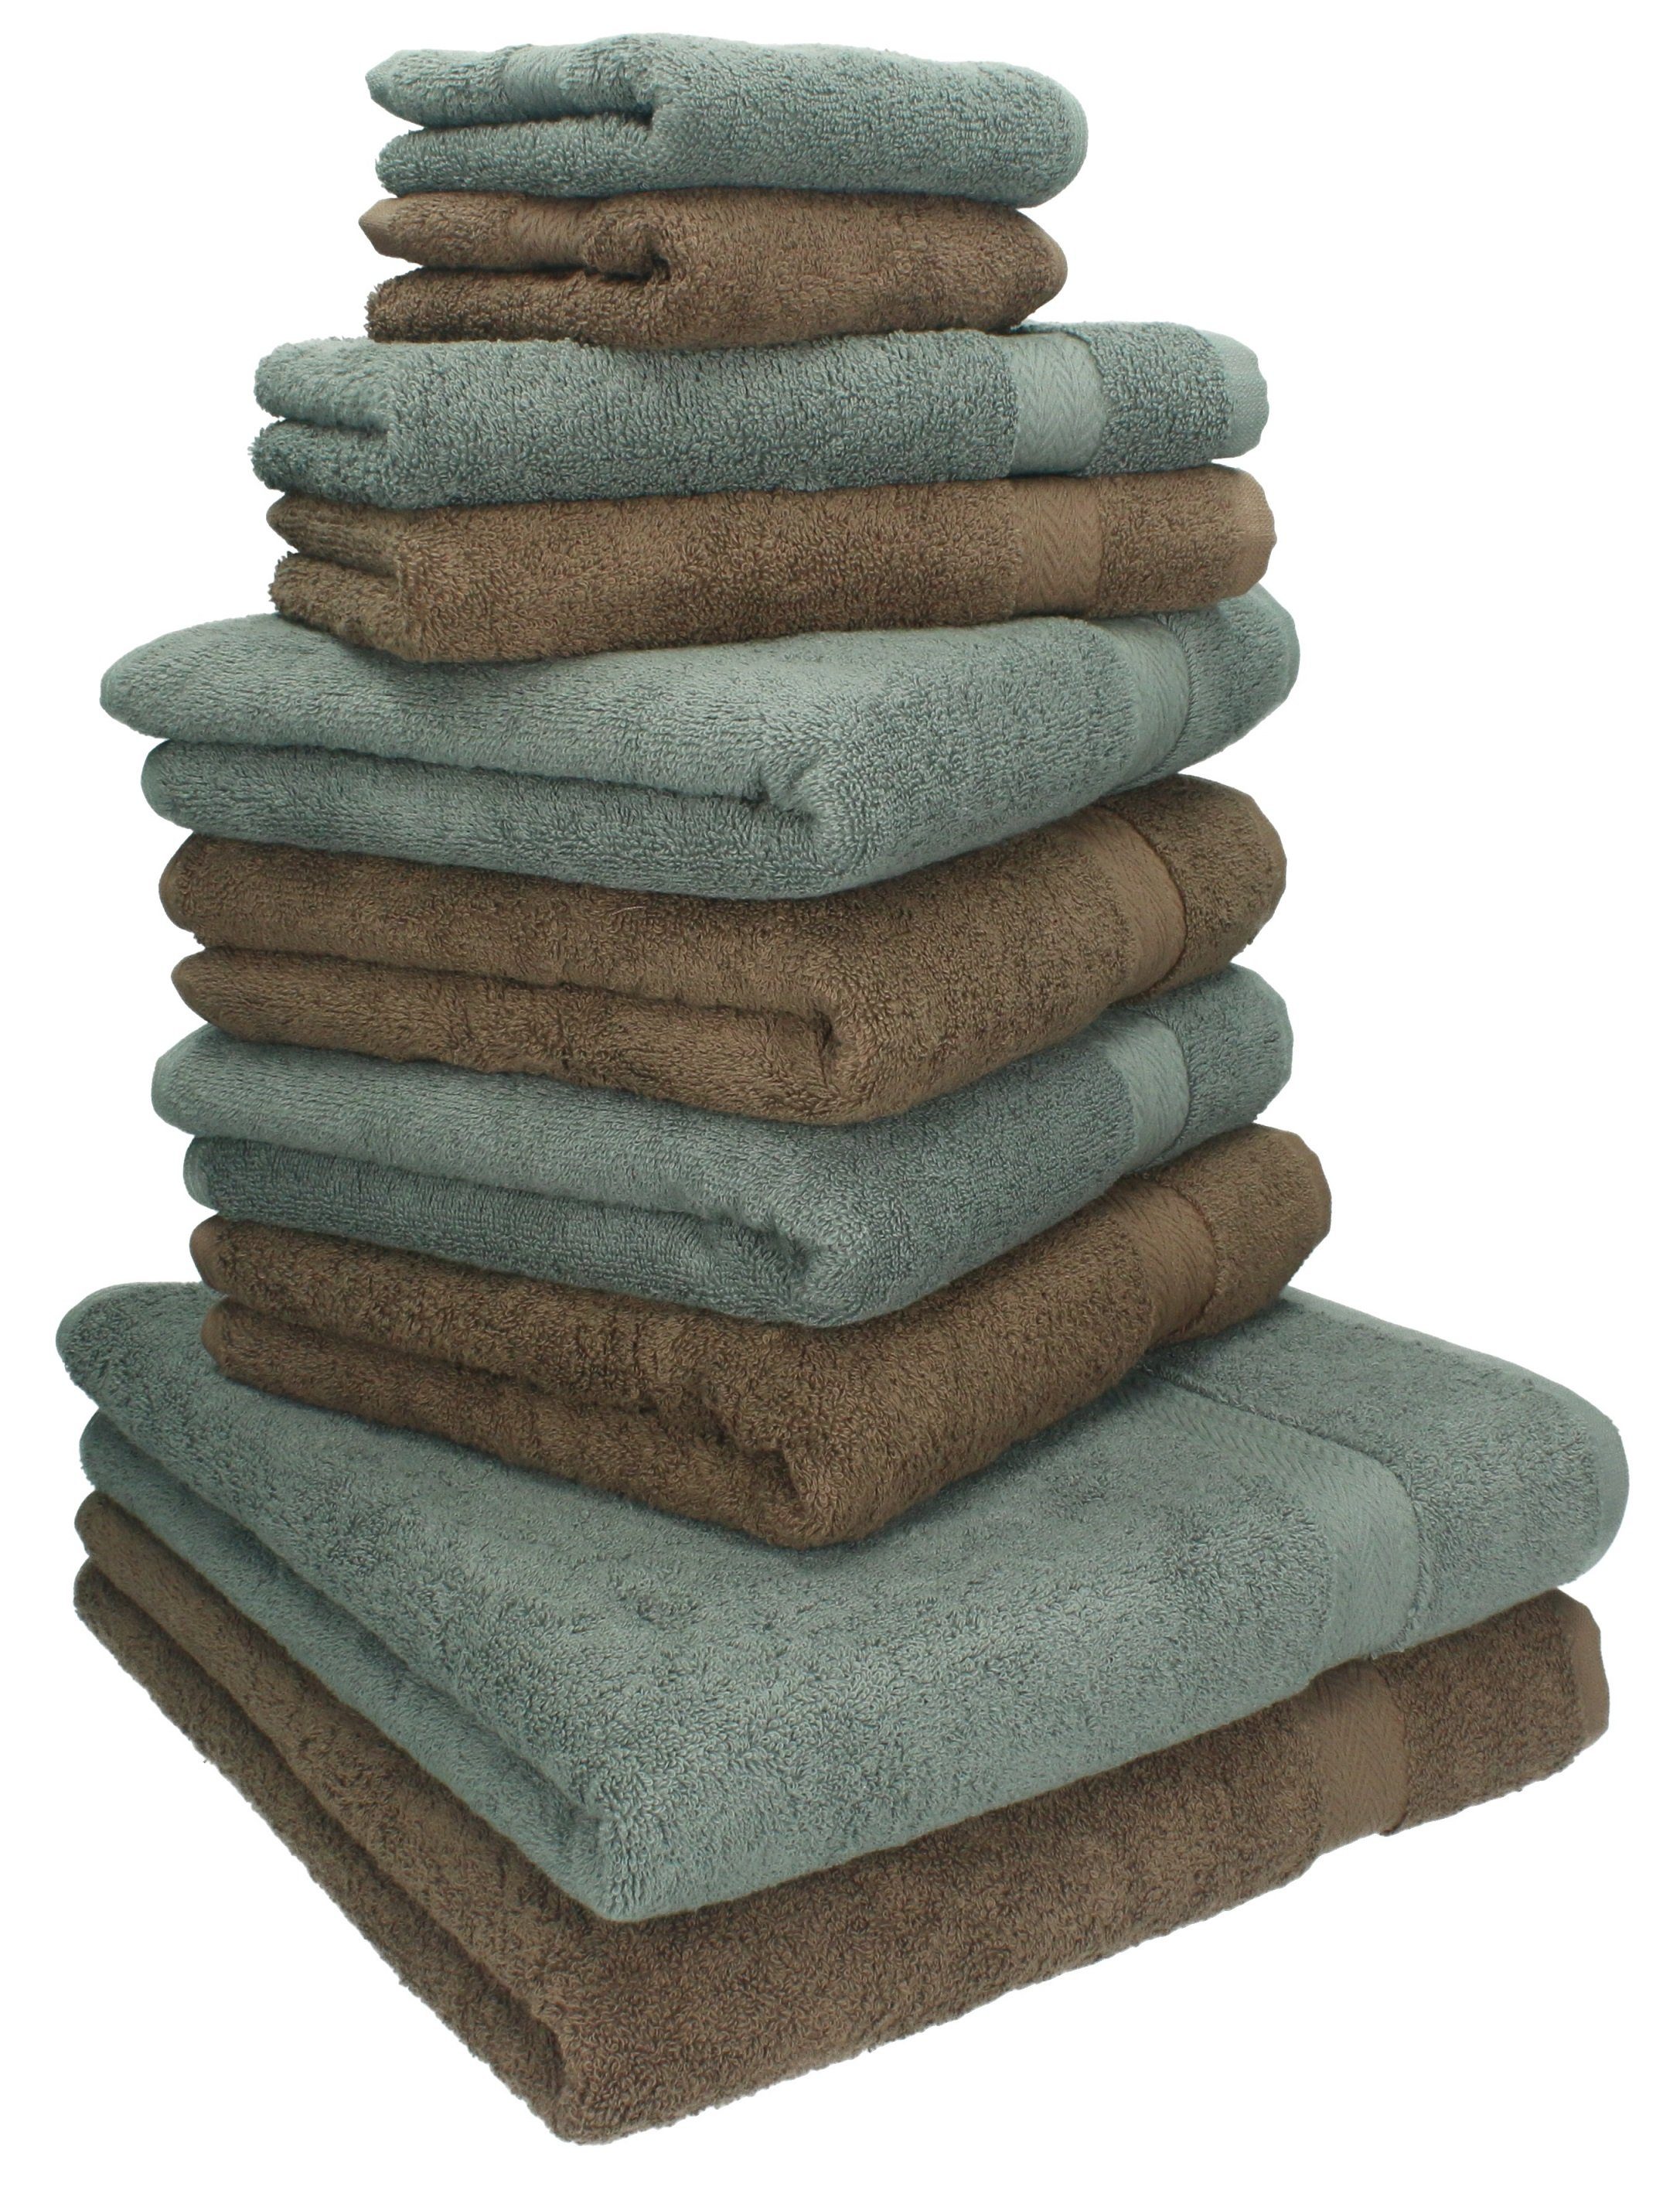 Betz Handtuch Set 10-TLG. Handtuch-Set Classic Farbe nussbraun und anthrazit, 100% Baumwolle